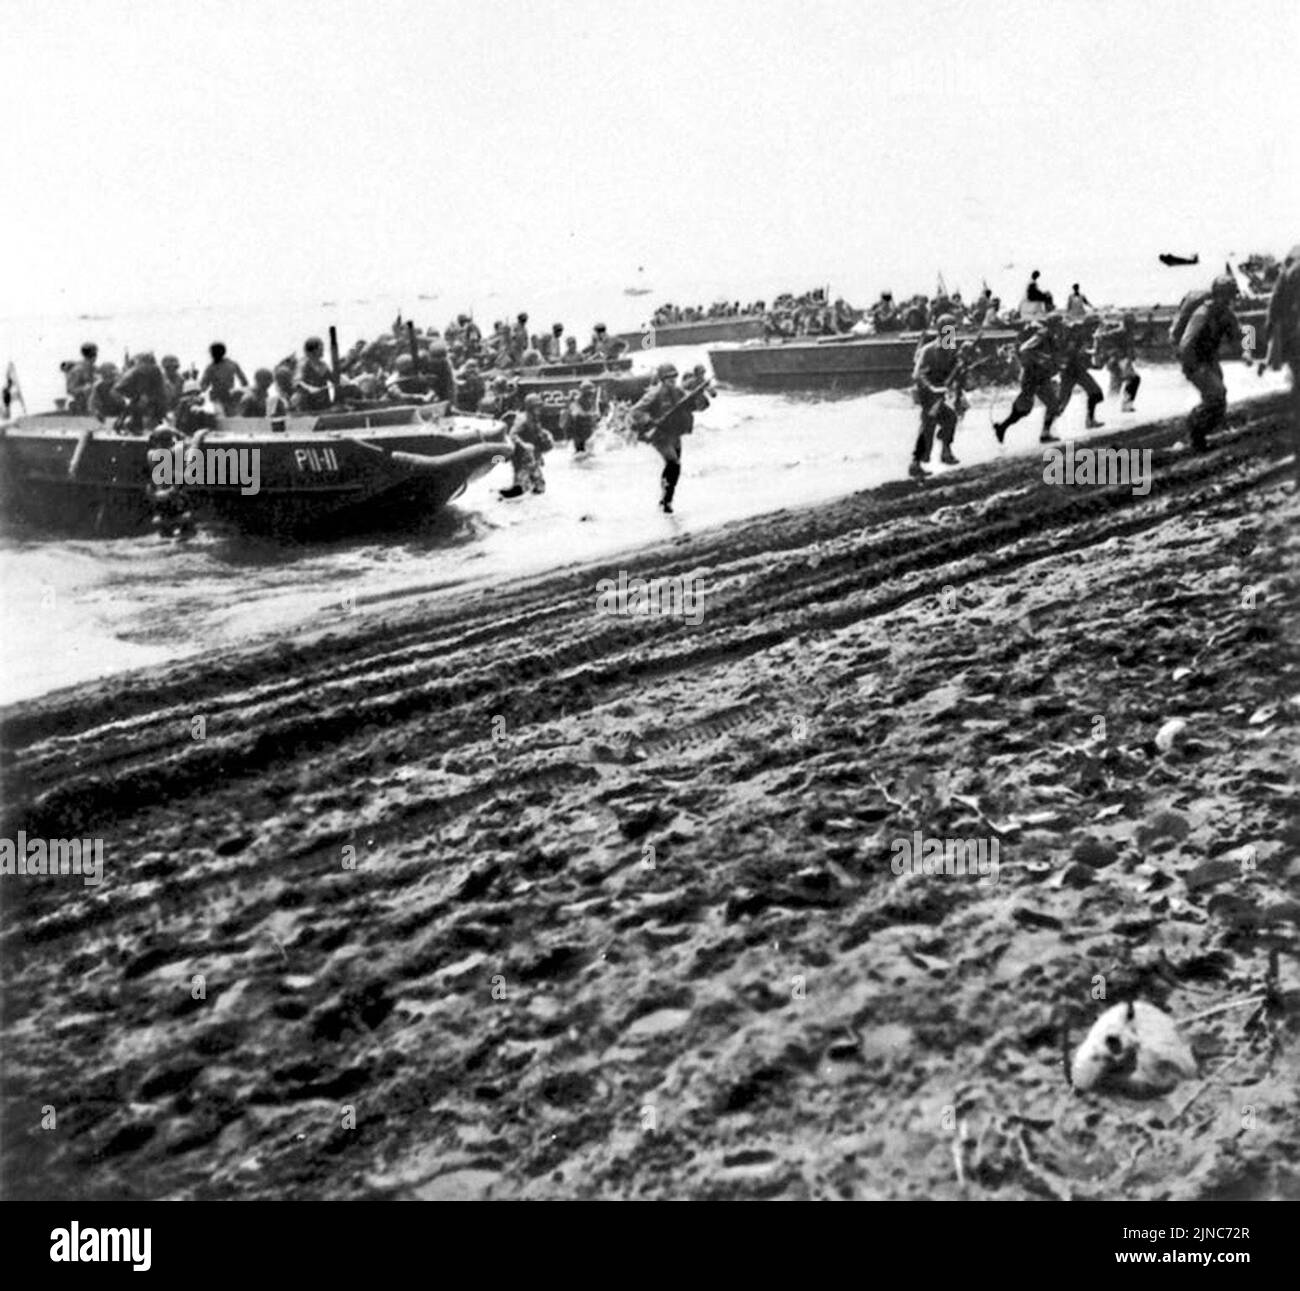 Los Marines de EE.UU. Desembarcan de su embarcación en la playa de Guadalcanal el 7 de agosto de 1942. Foto de stock